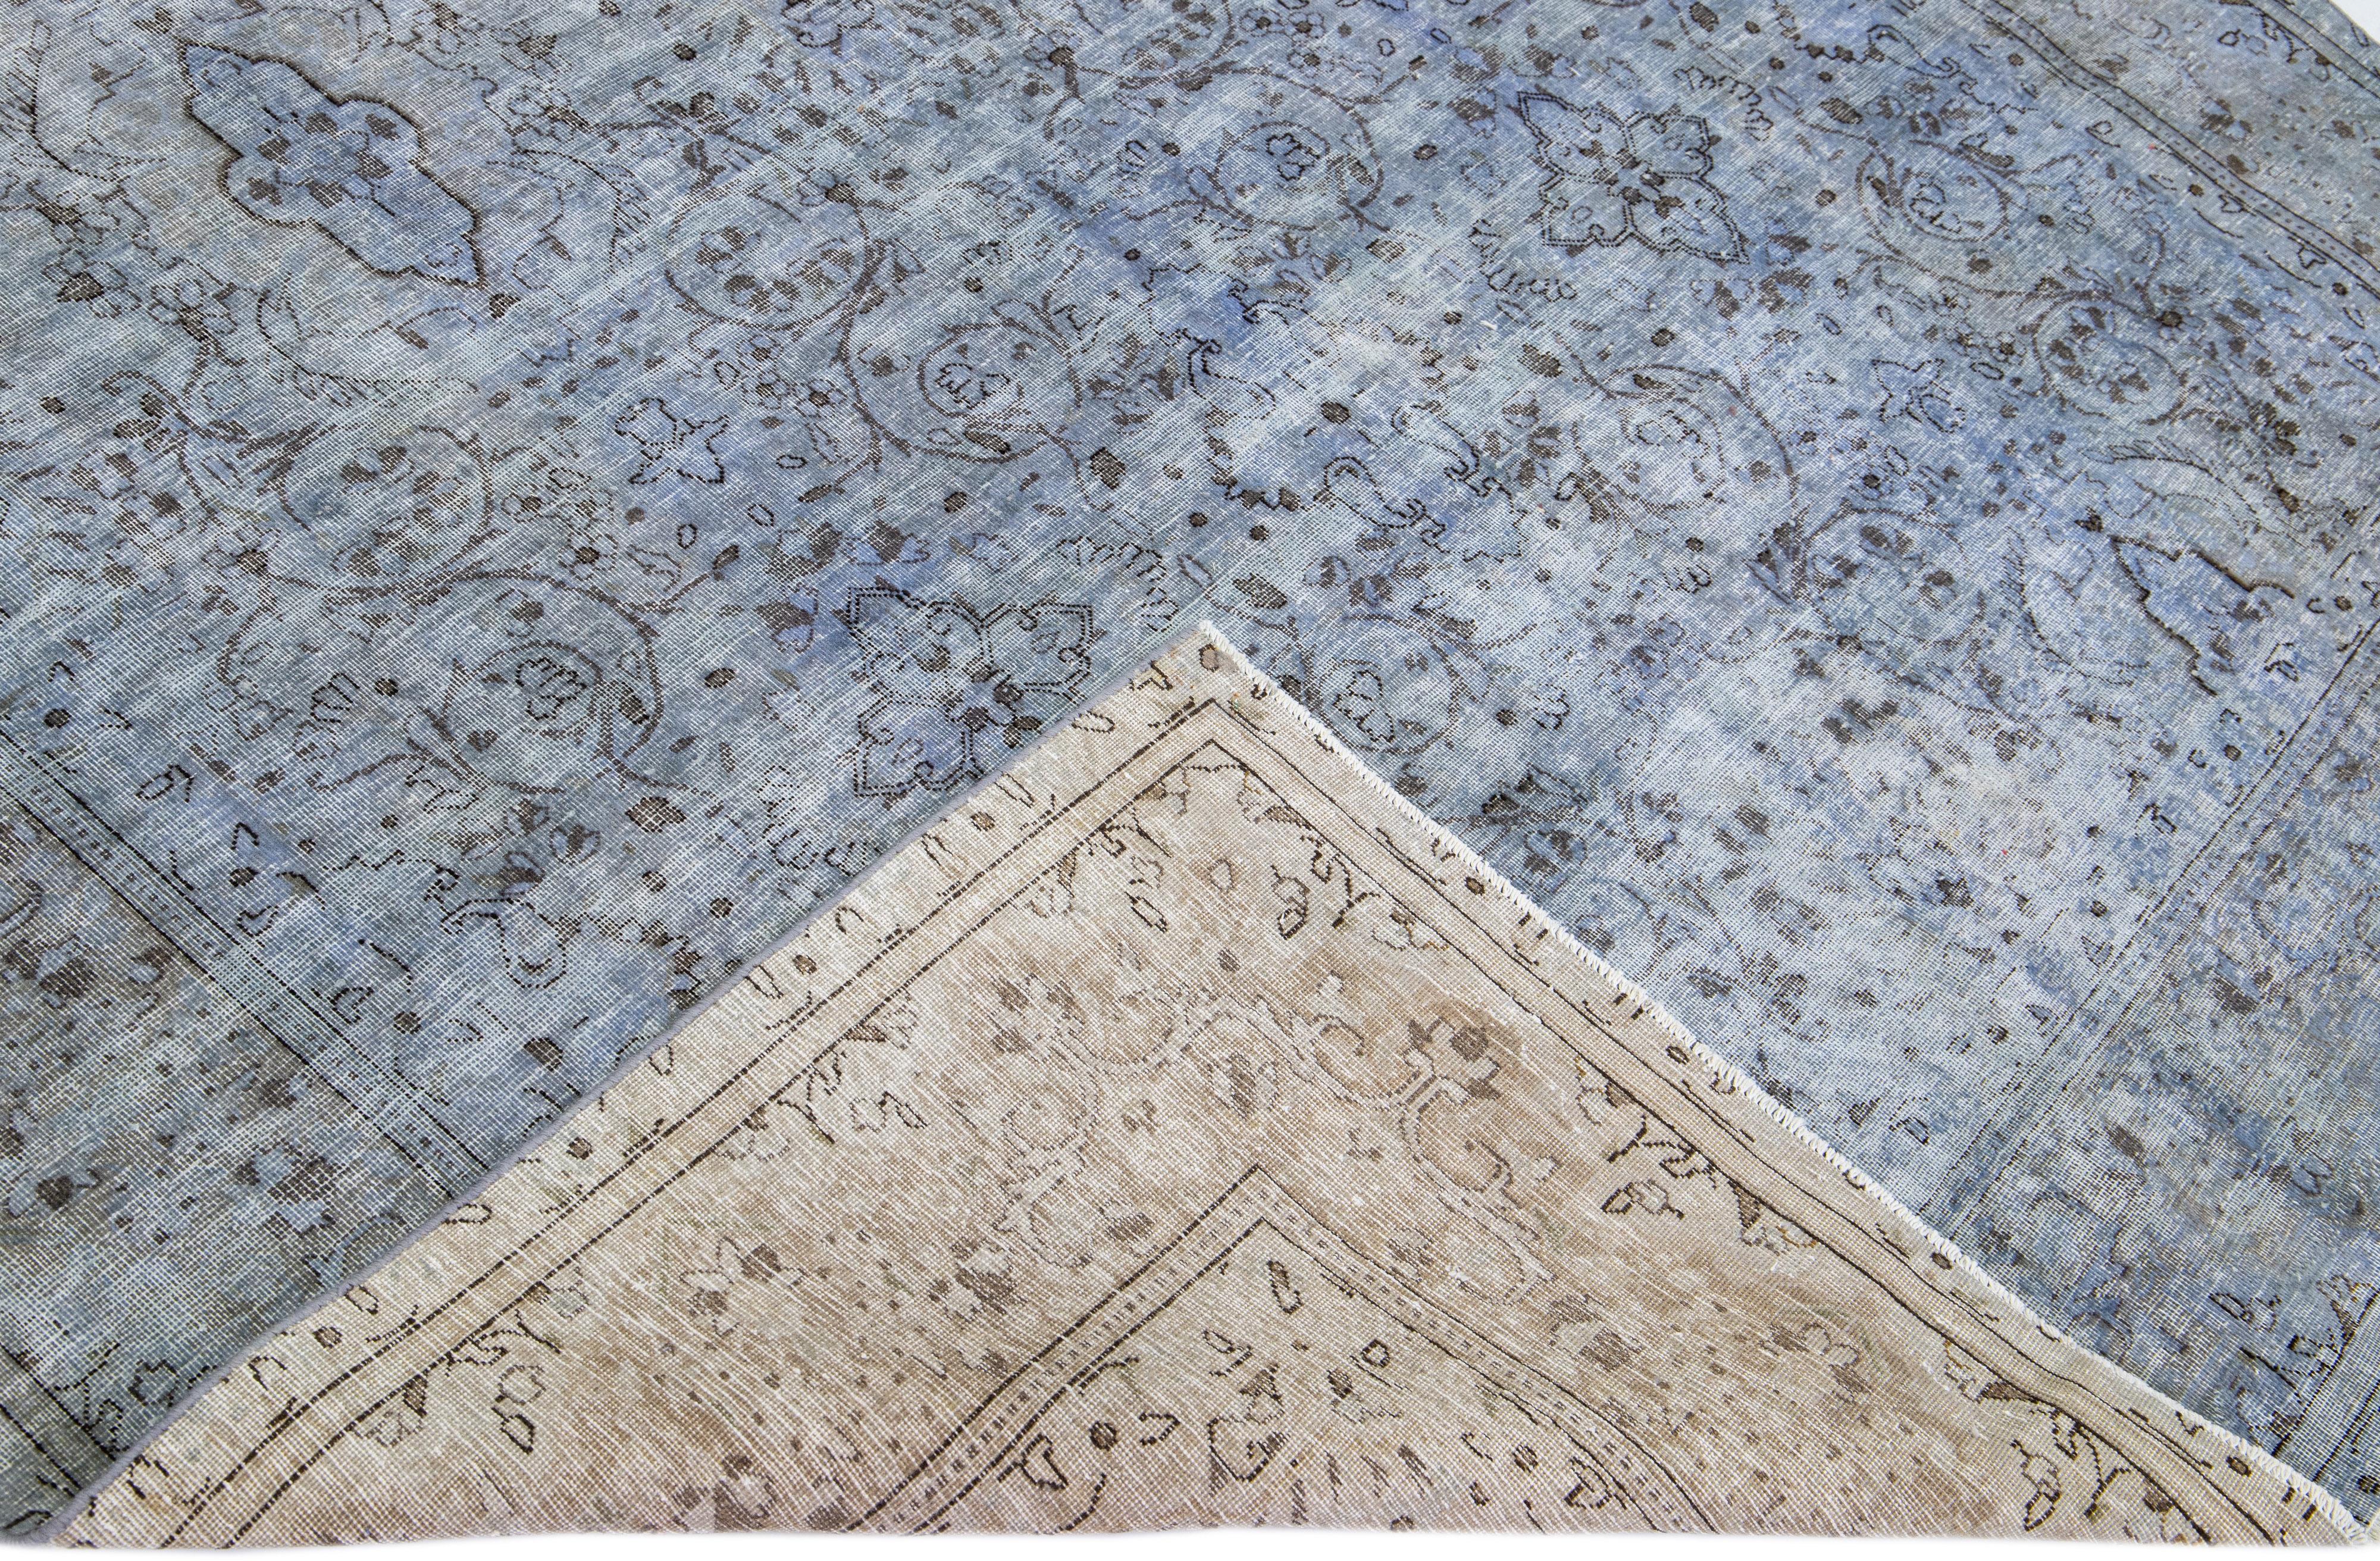 Magnifique tapis vintage en laine surteinte nouée à la main avec un champ bleu. Ce tapis persan présente un motif floral sur toute sa surface.

Ce tapis mesure : 6'8'' x 9'4